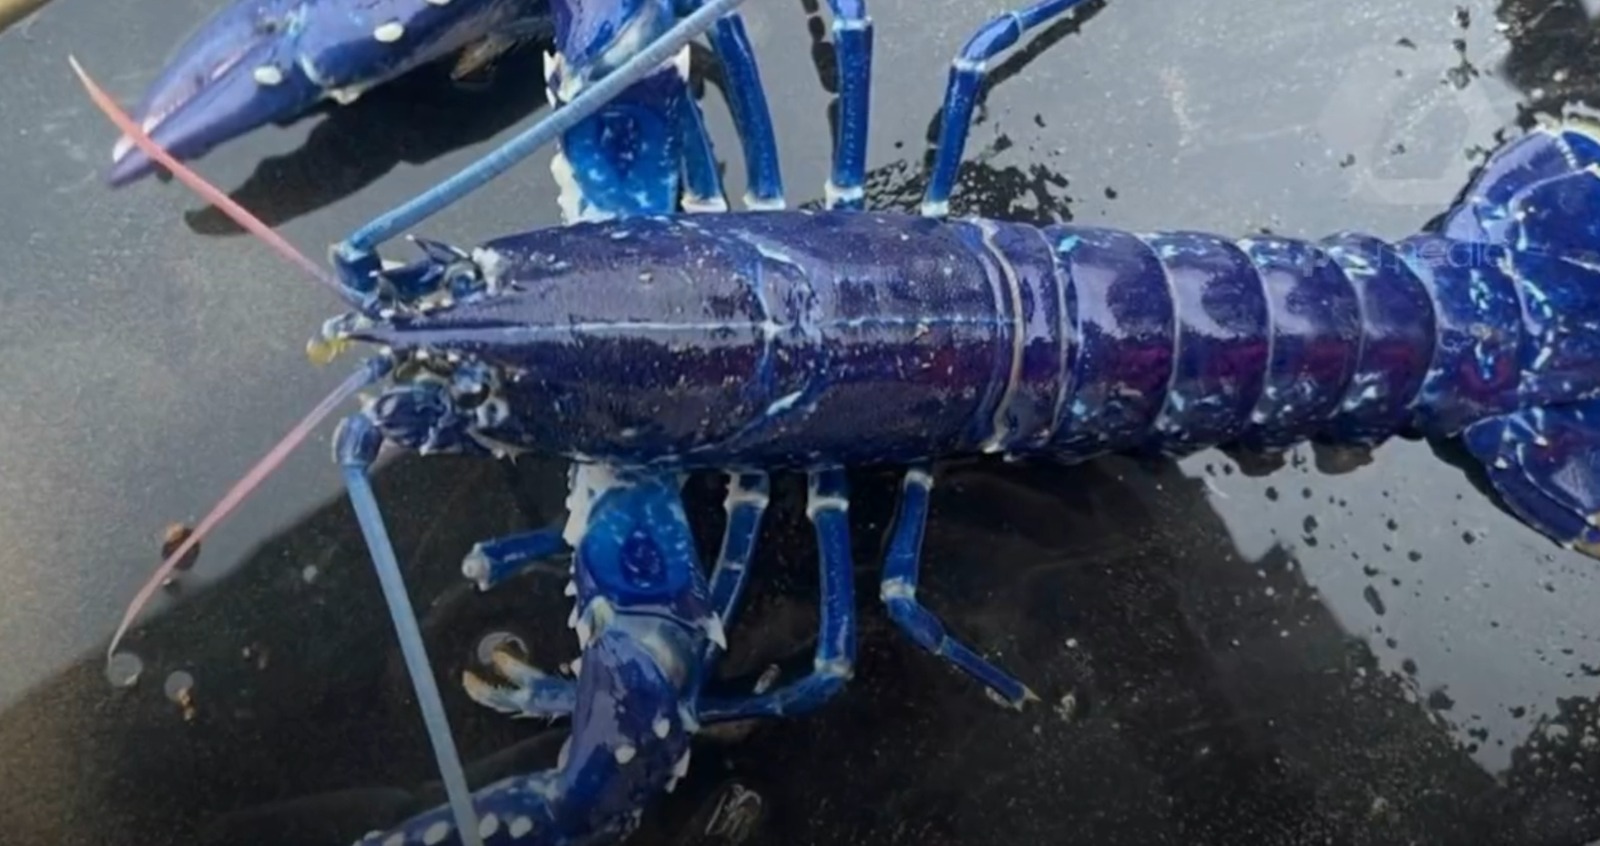 Pescador encontra lagosta azul: “Espero que se alguém a apanhar, a devolva também” ao mar